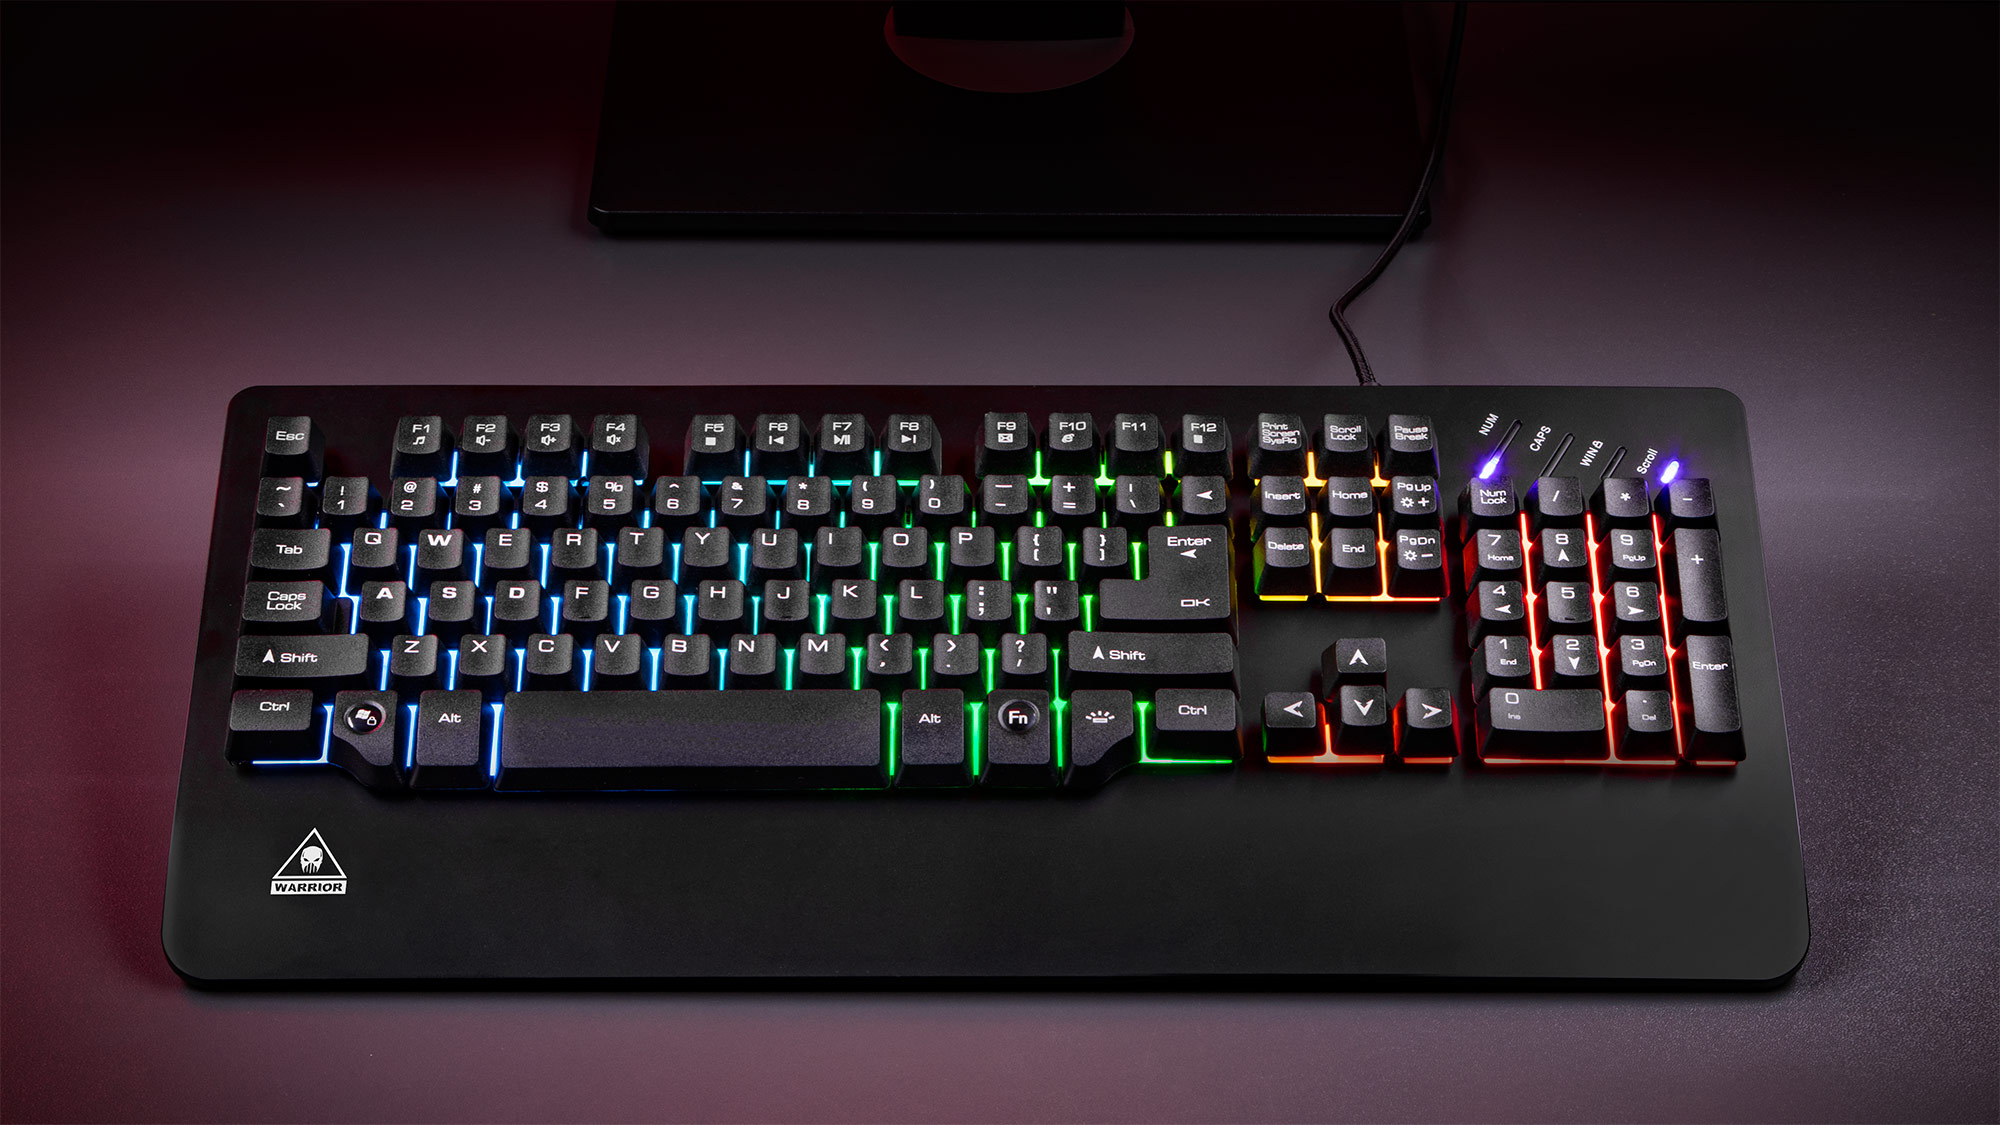 Iti place sa te joci noaptea? Iluminarea in mai multe culori a tastaturii GK50 de la Kruger&Matz transforma sesiunile de gaming intr-o adevarata placere! In plus, tastatura are doua moduri de functionare - tu esti cel care decide pe care il vei folosi.  